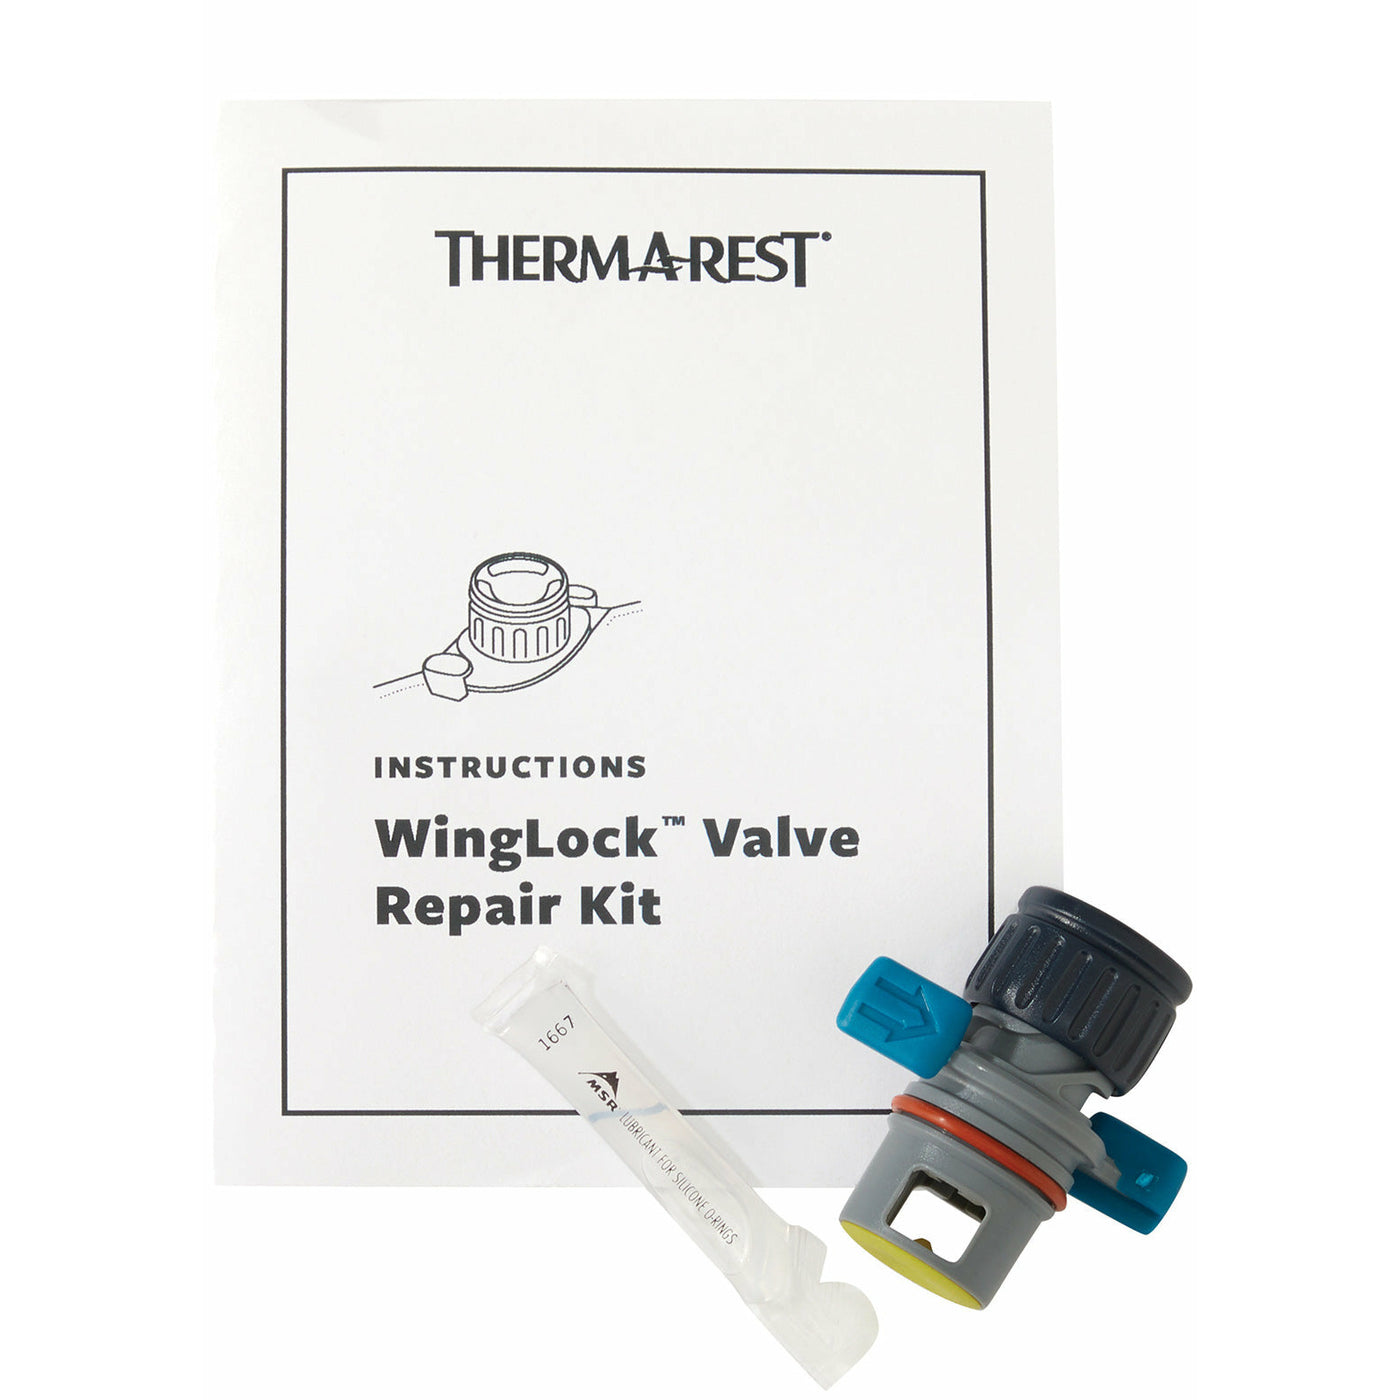 Winglock Valve Repair Kit